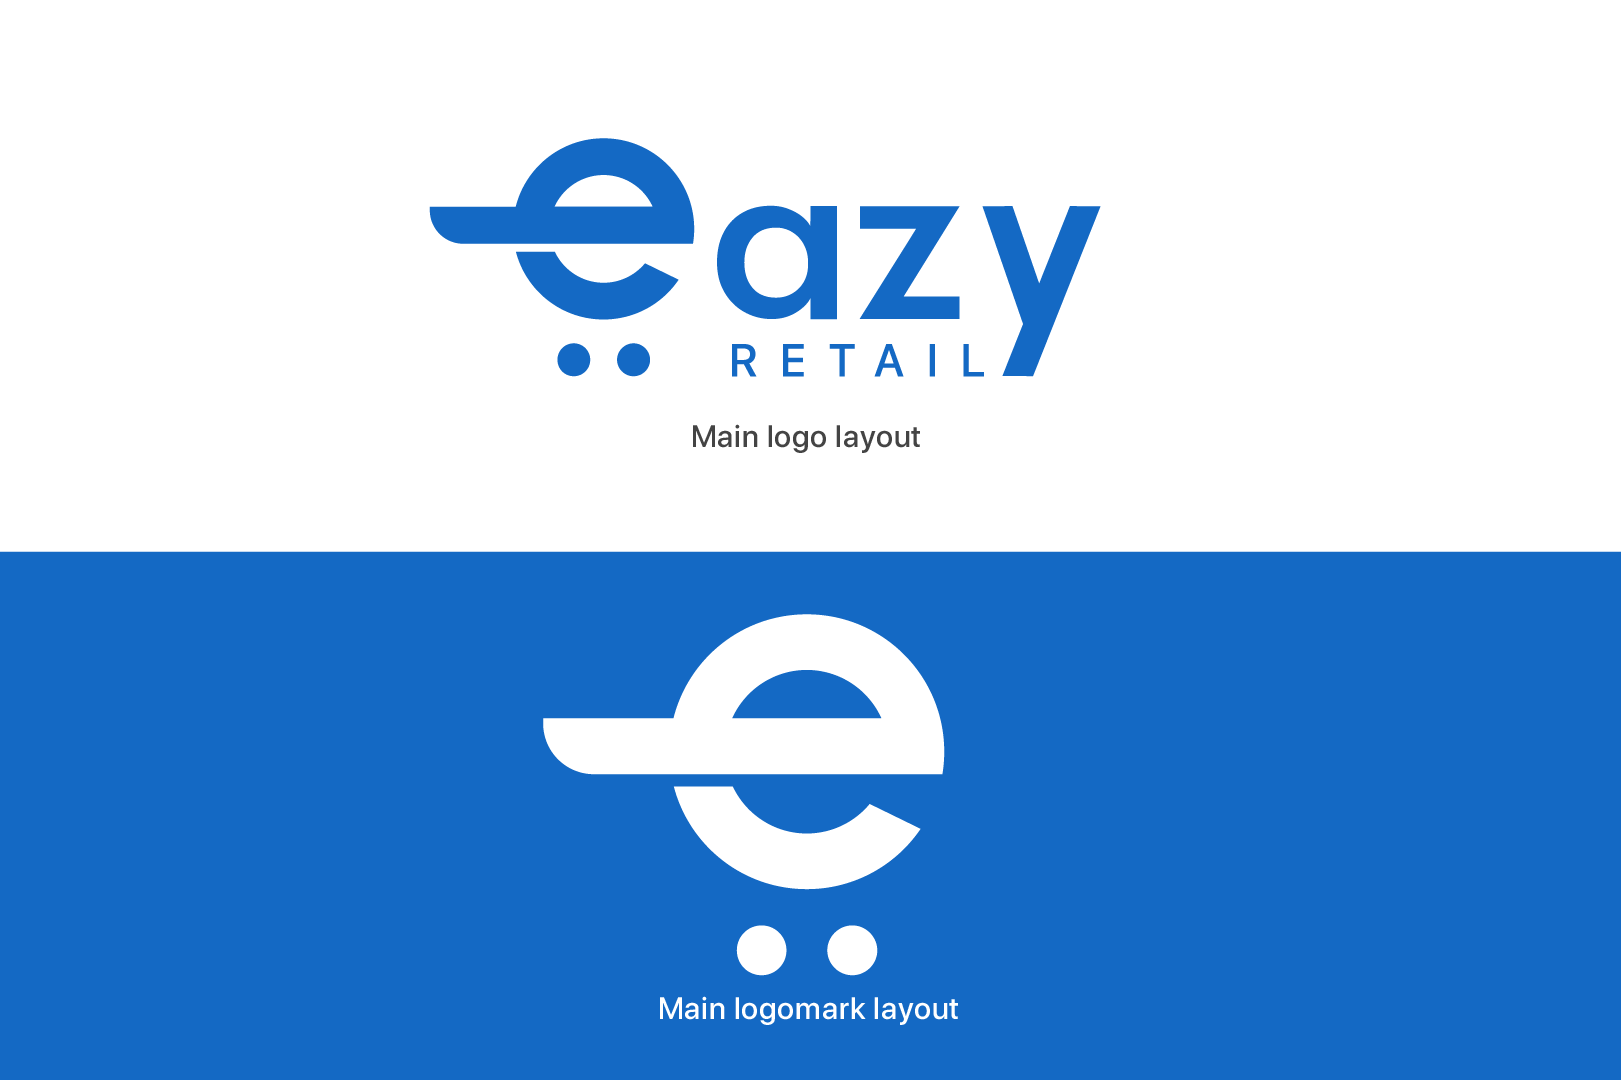 Eazy Retail